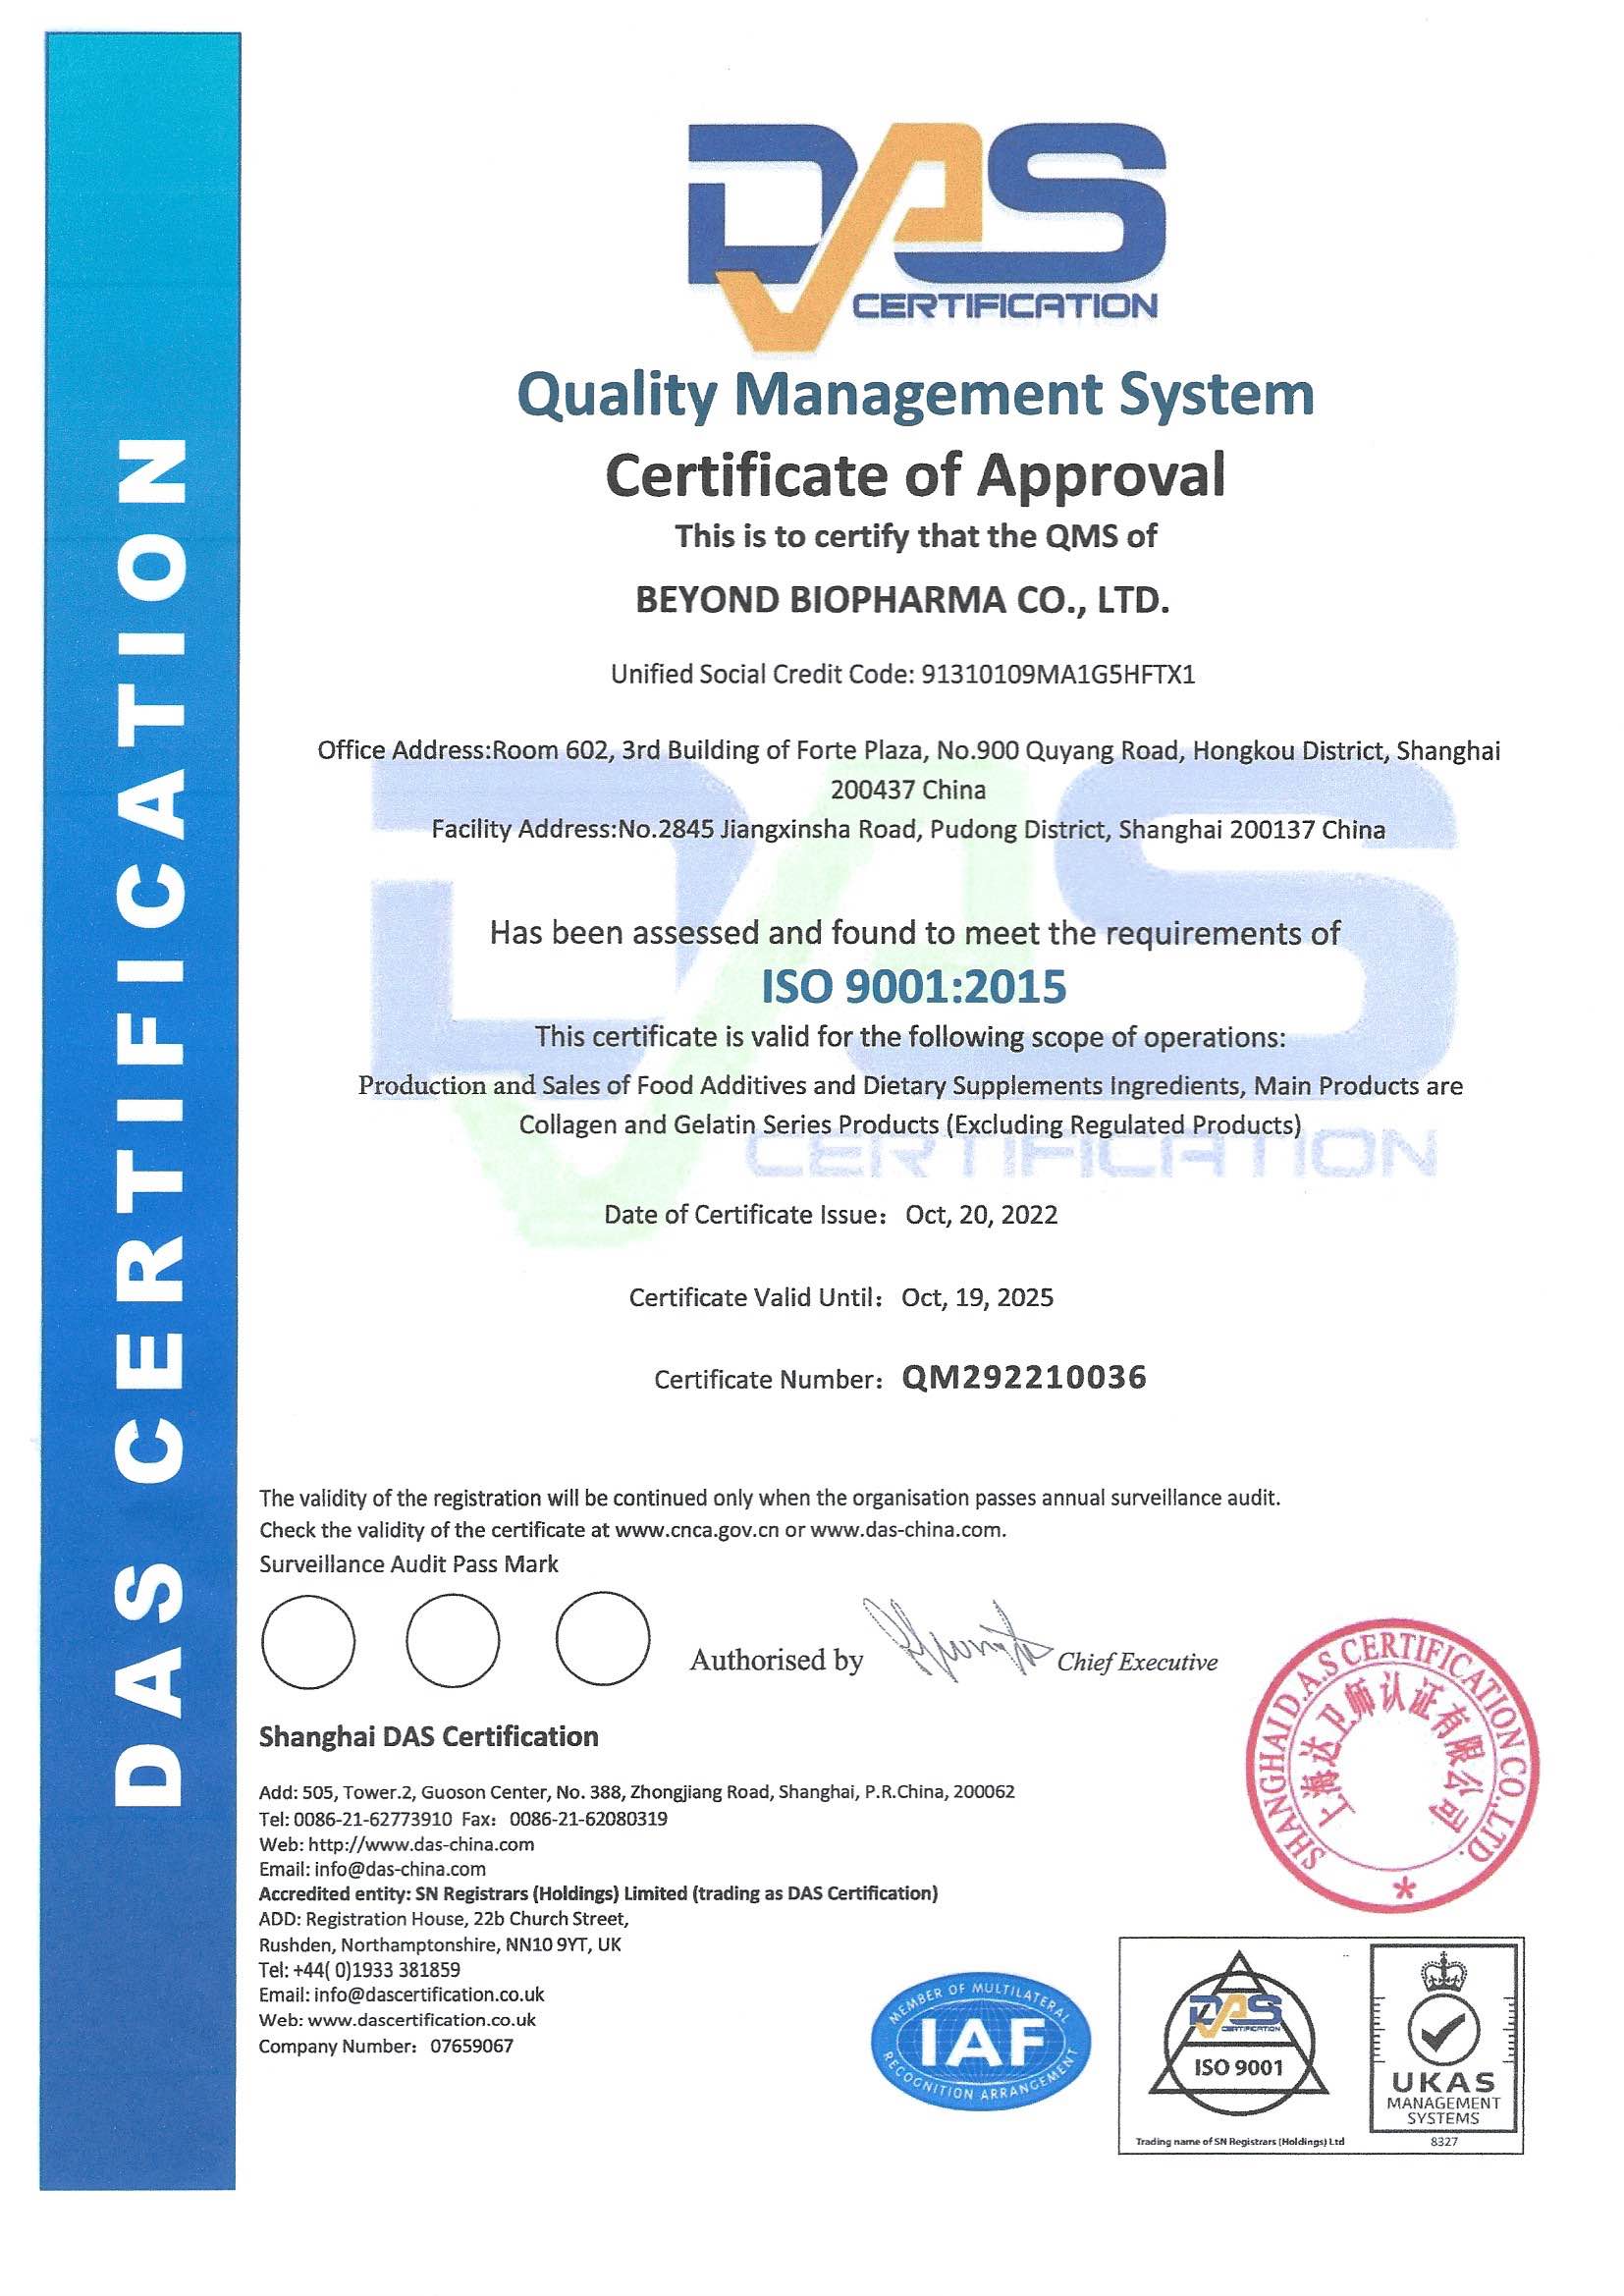 Lokwinske ús bedriuw mei súkses opwurdearje ISO 9001: 2015 sertifikaasjesertifikaat foar kwaliteitsbehearsysteem